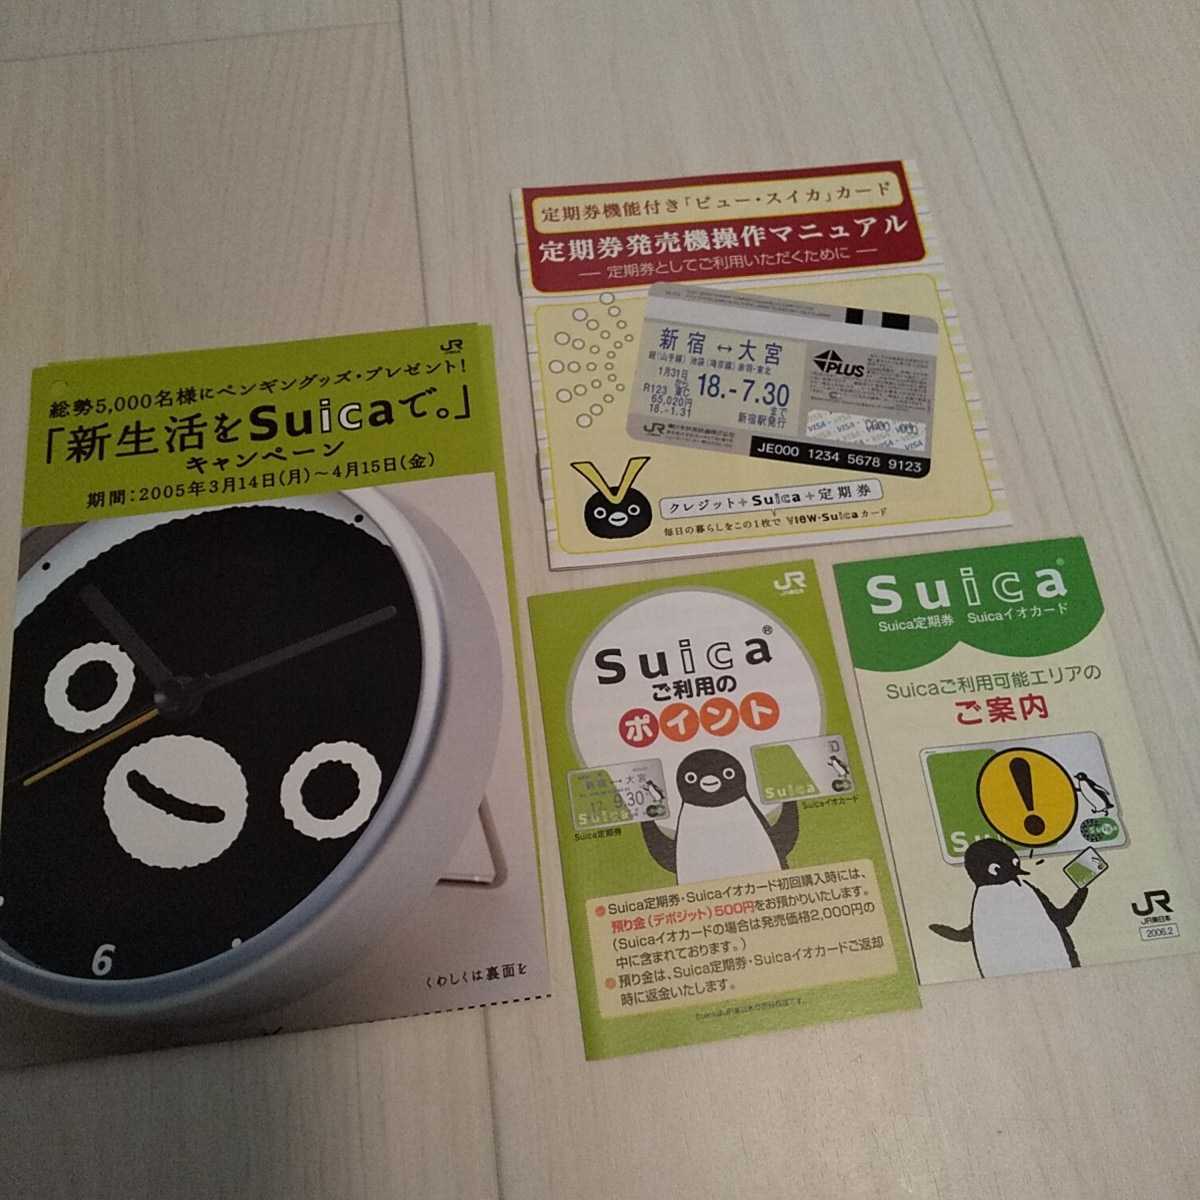 ◆JR東日本Suica関連パンフレット42枚セット 2005～2007年頃 Suicaのペンギン/ご利用案内/入会申込書/ビュー・スイカ/モバイルSuica/パスモ